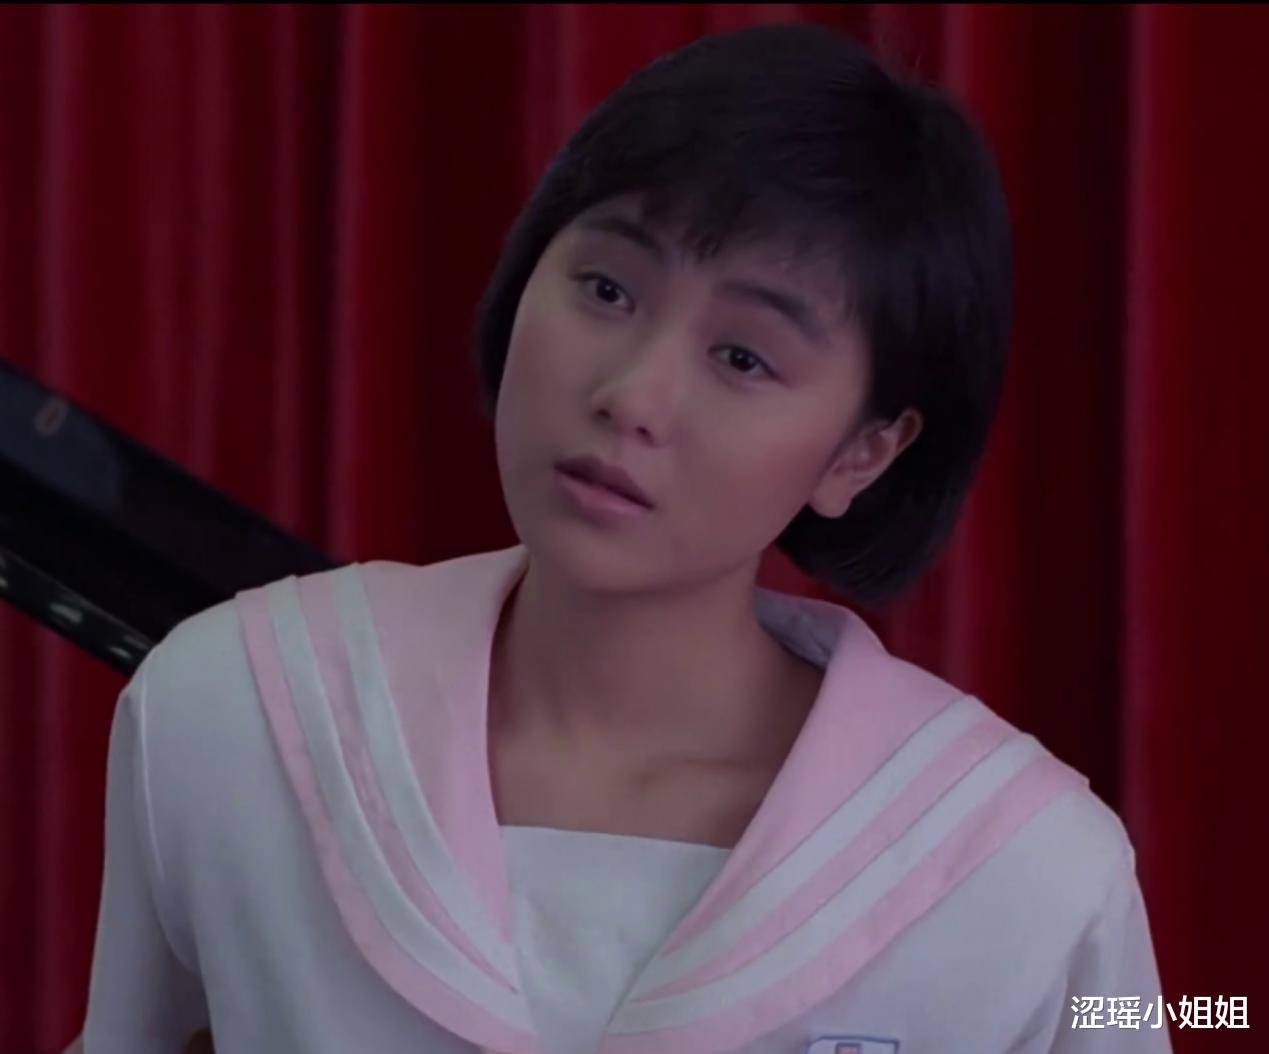 袁洁莹因此走红,签约tvb之后,她出演的第一部电视剧是和郭富城主演的